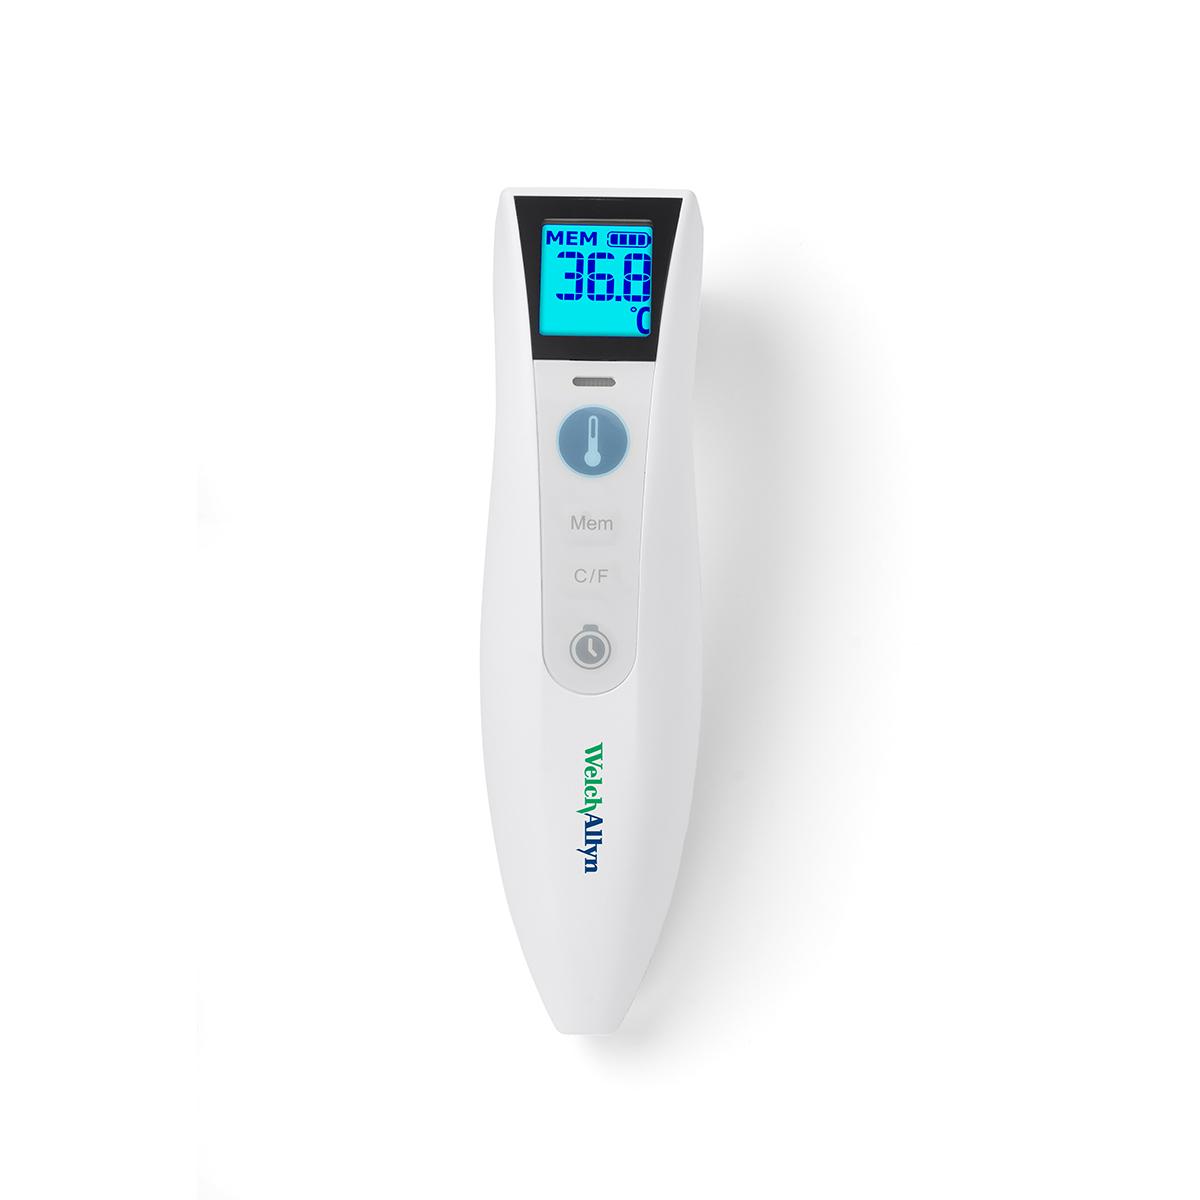 Bezdotykowy termometr Welch Allyn CareTemp jest biały, z jasnoniebieskim wyświetlaczem cyfrowym